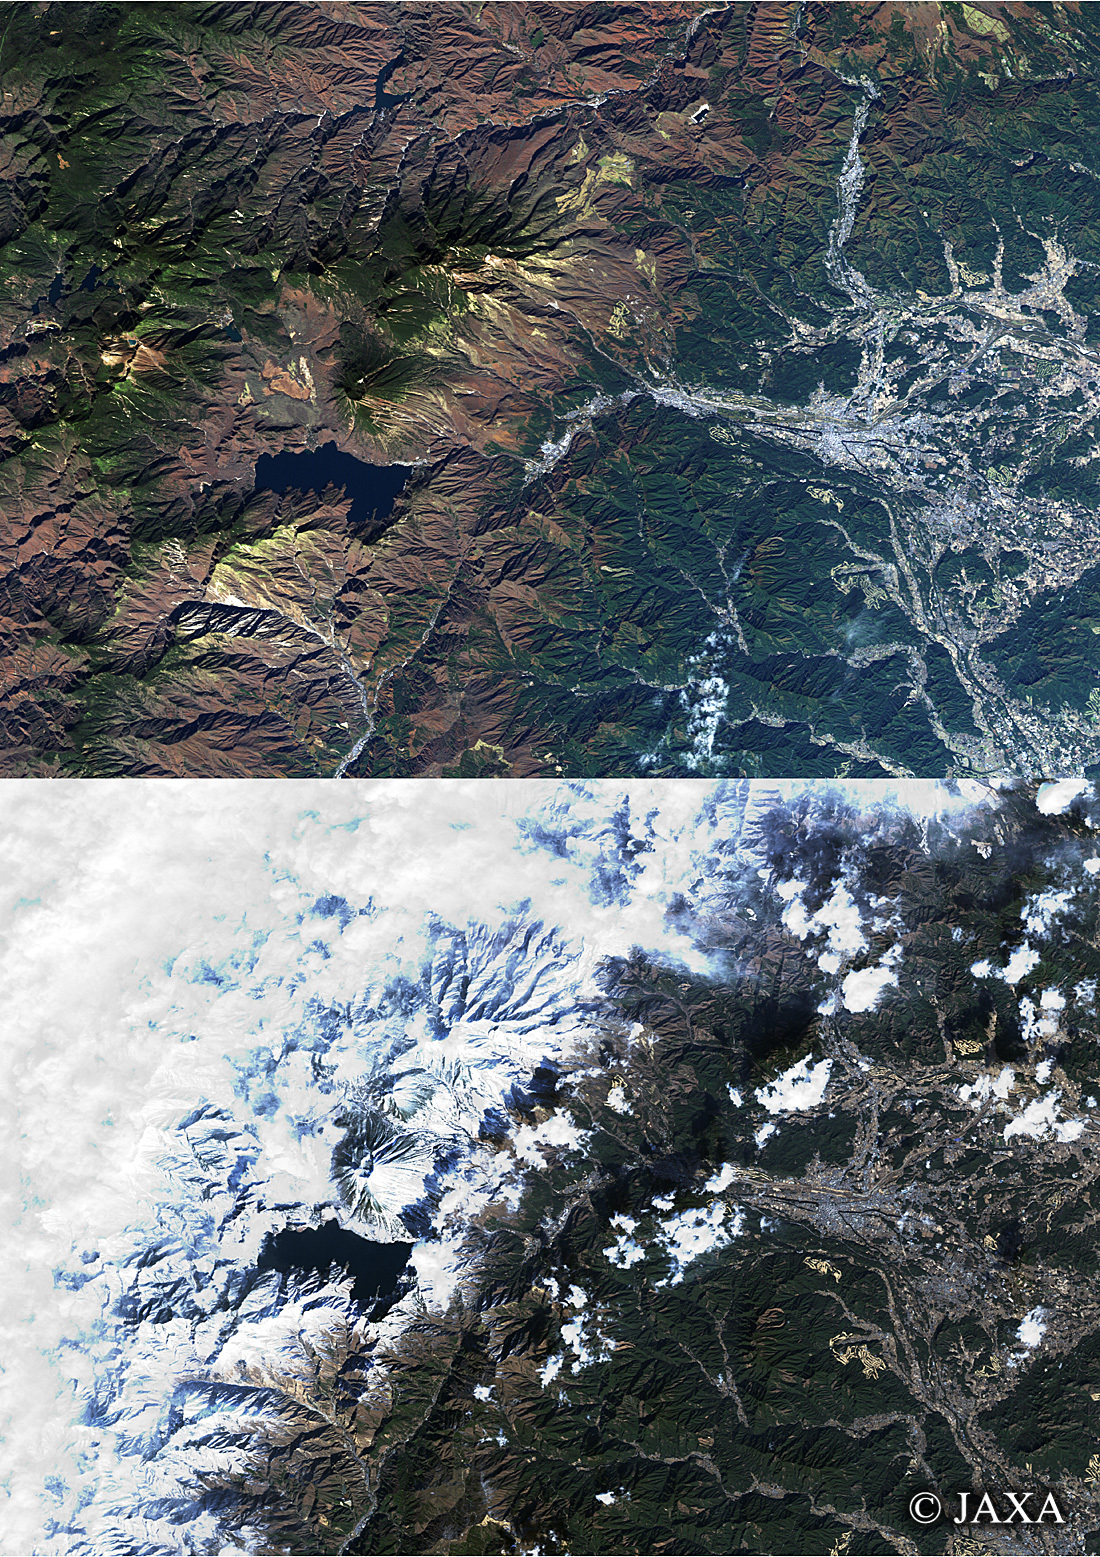 だいちから見た日本の都市 日光の秋・冬:衛星画像